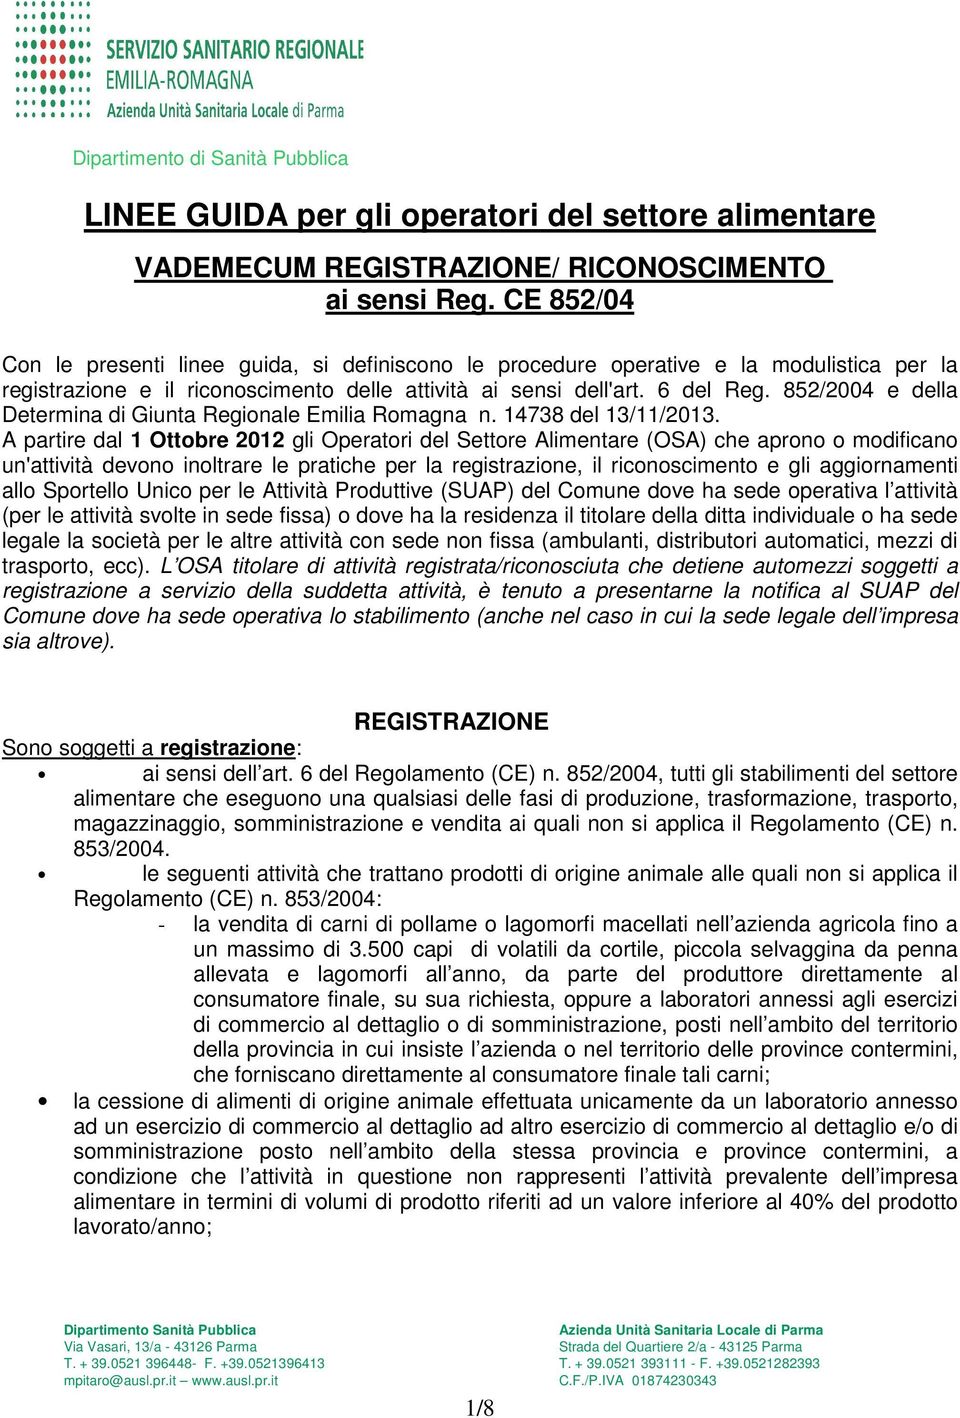 852/2004 e della Determina di Giunta Regionale Emilia Romagna n. 14738 del 13/11/2013.